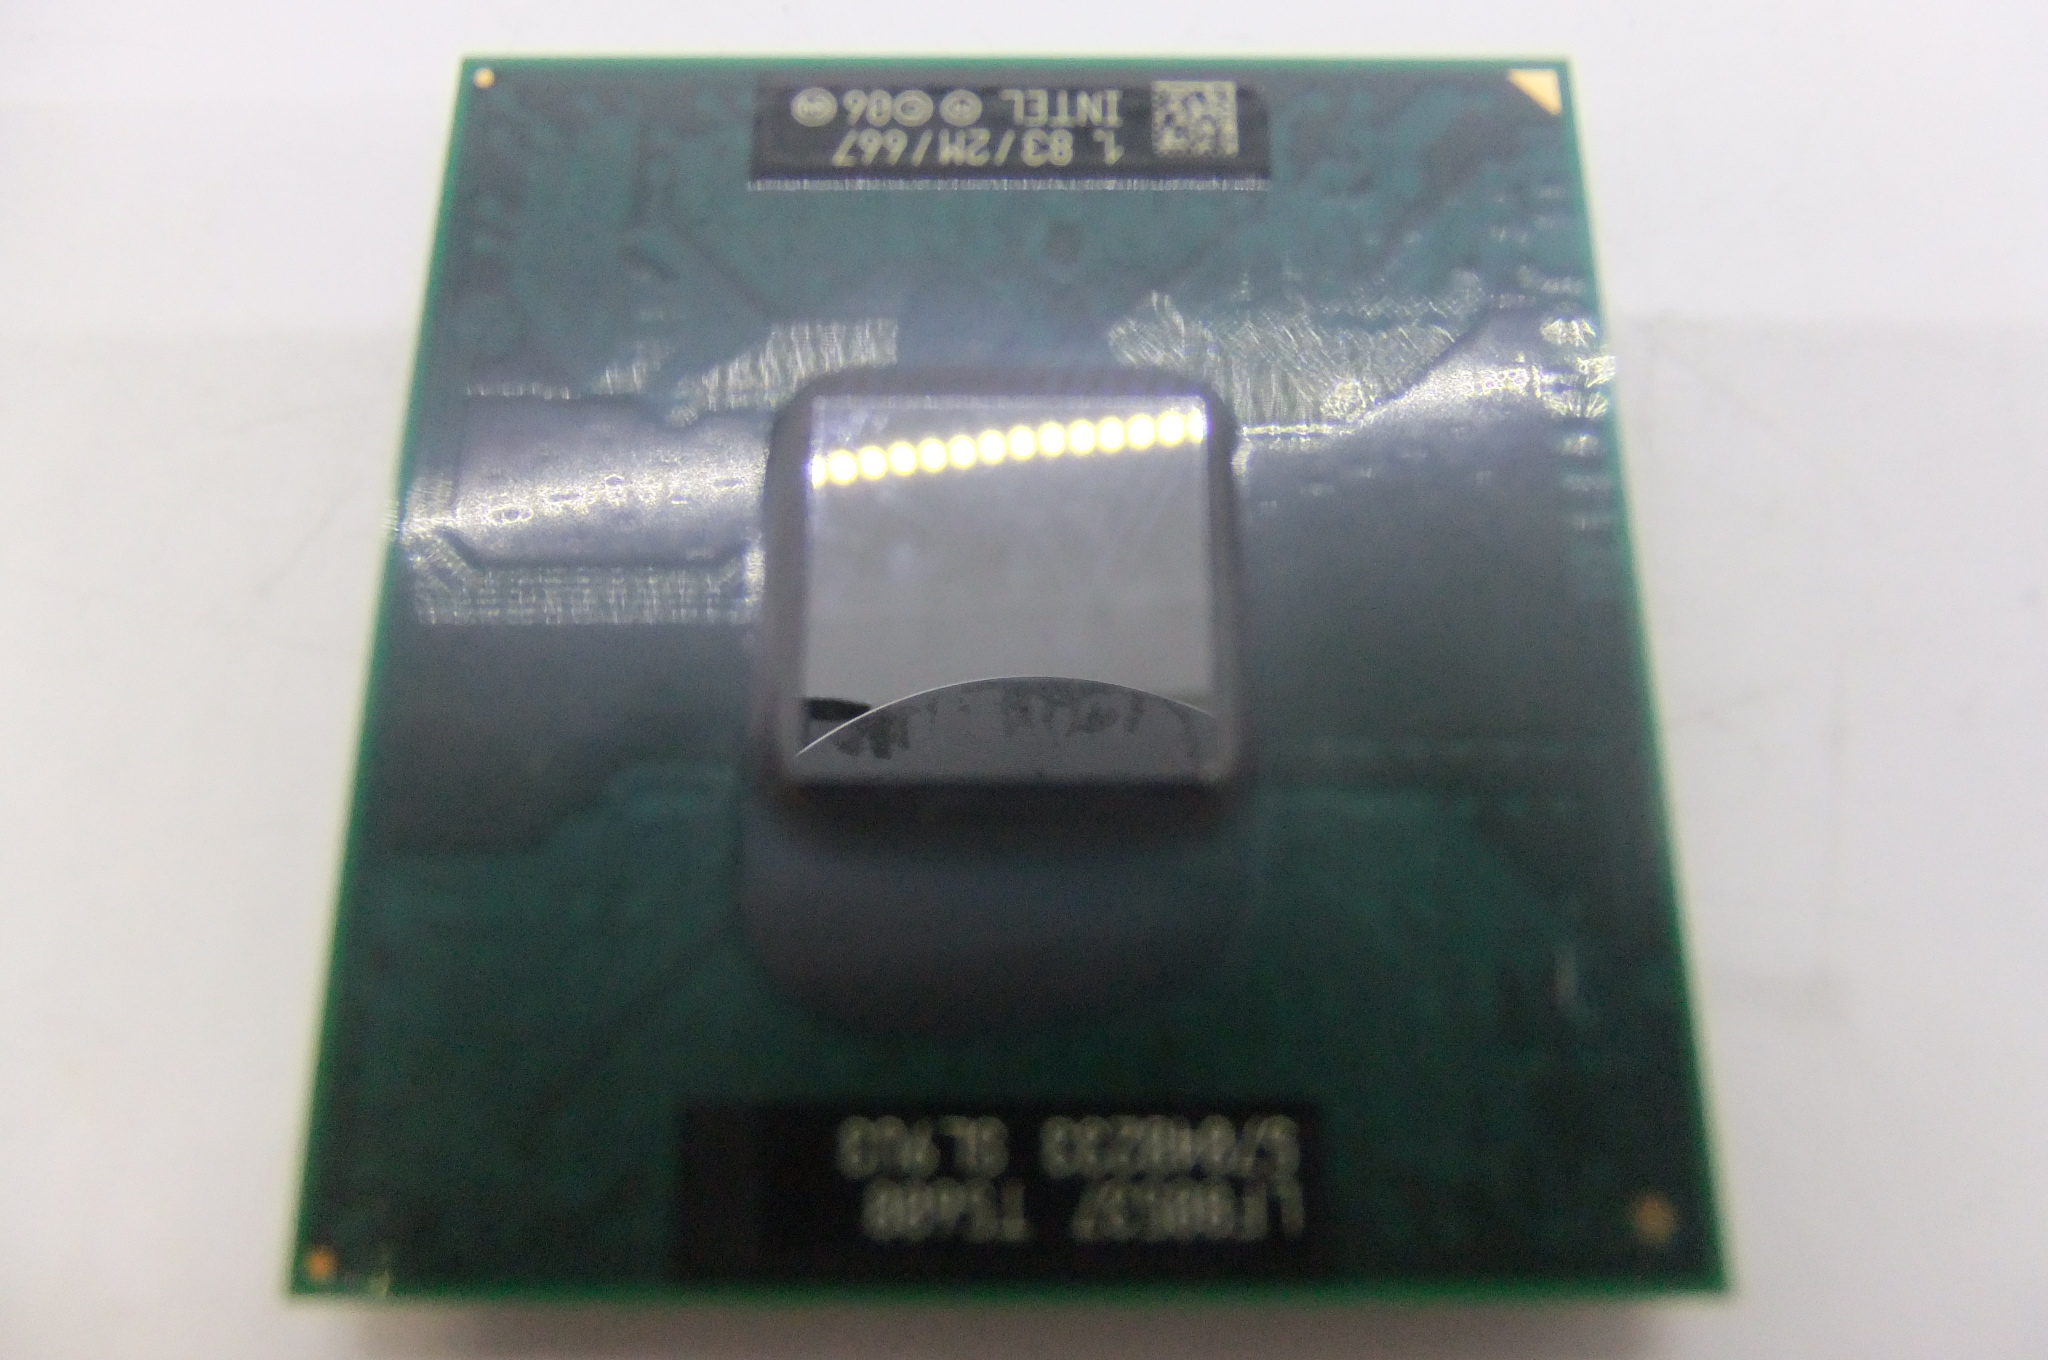 T5600 процессор. Intel Core 2 Duo шина данных. 478 Сокет процессоры для ноутбуков.